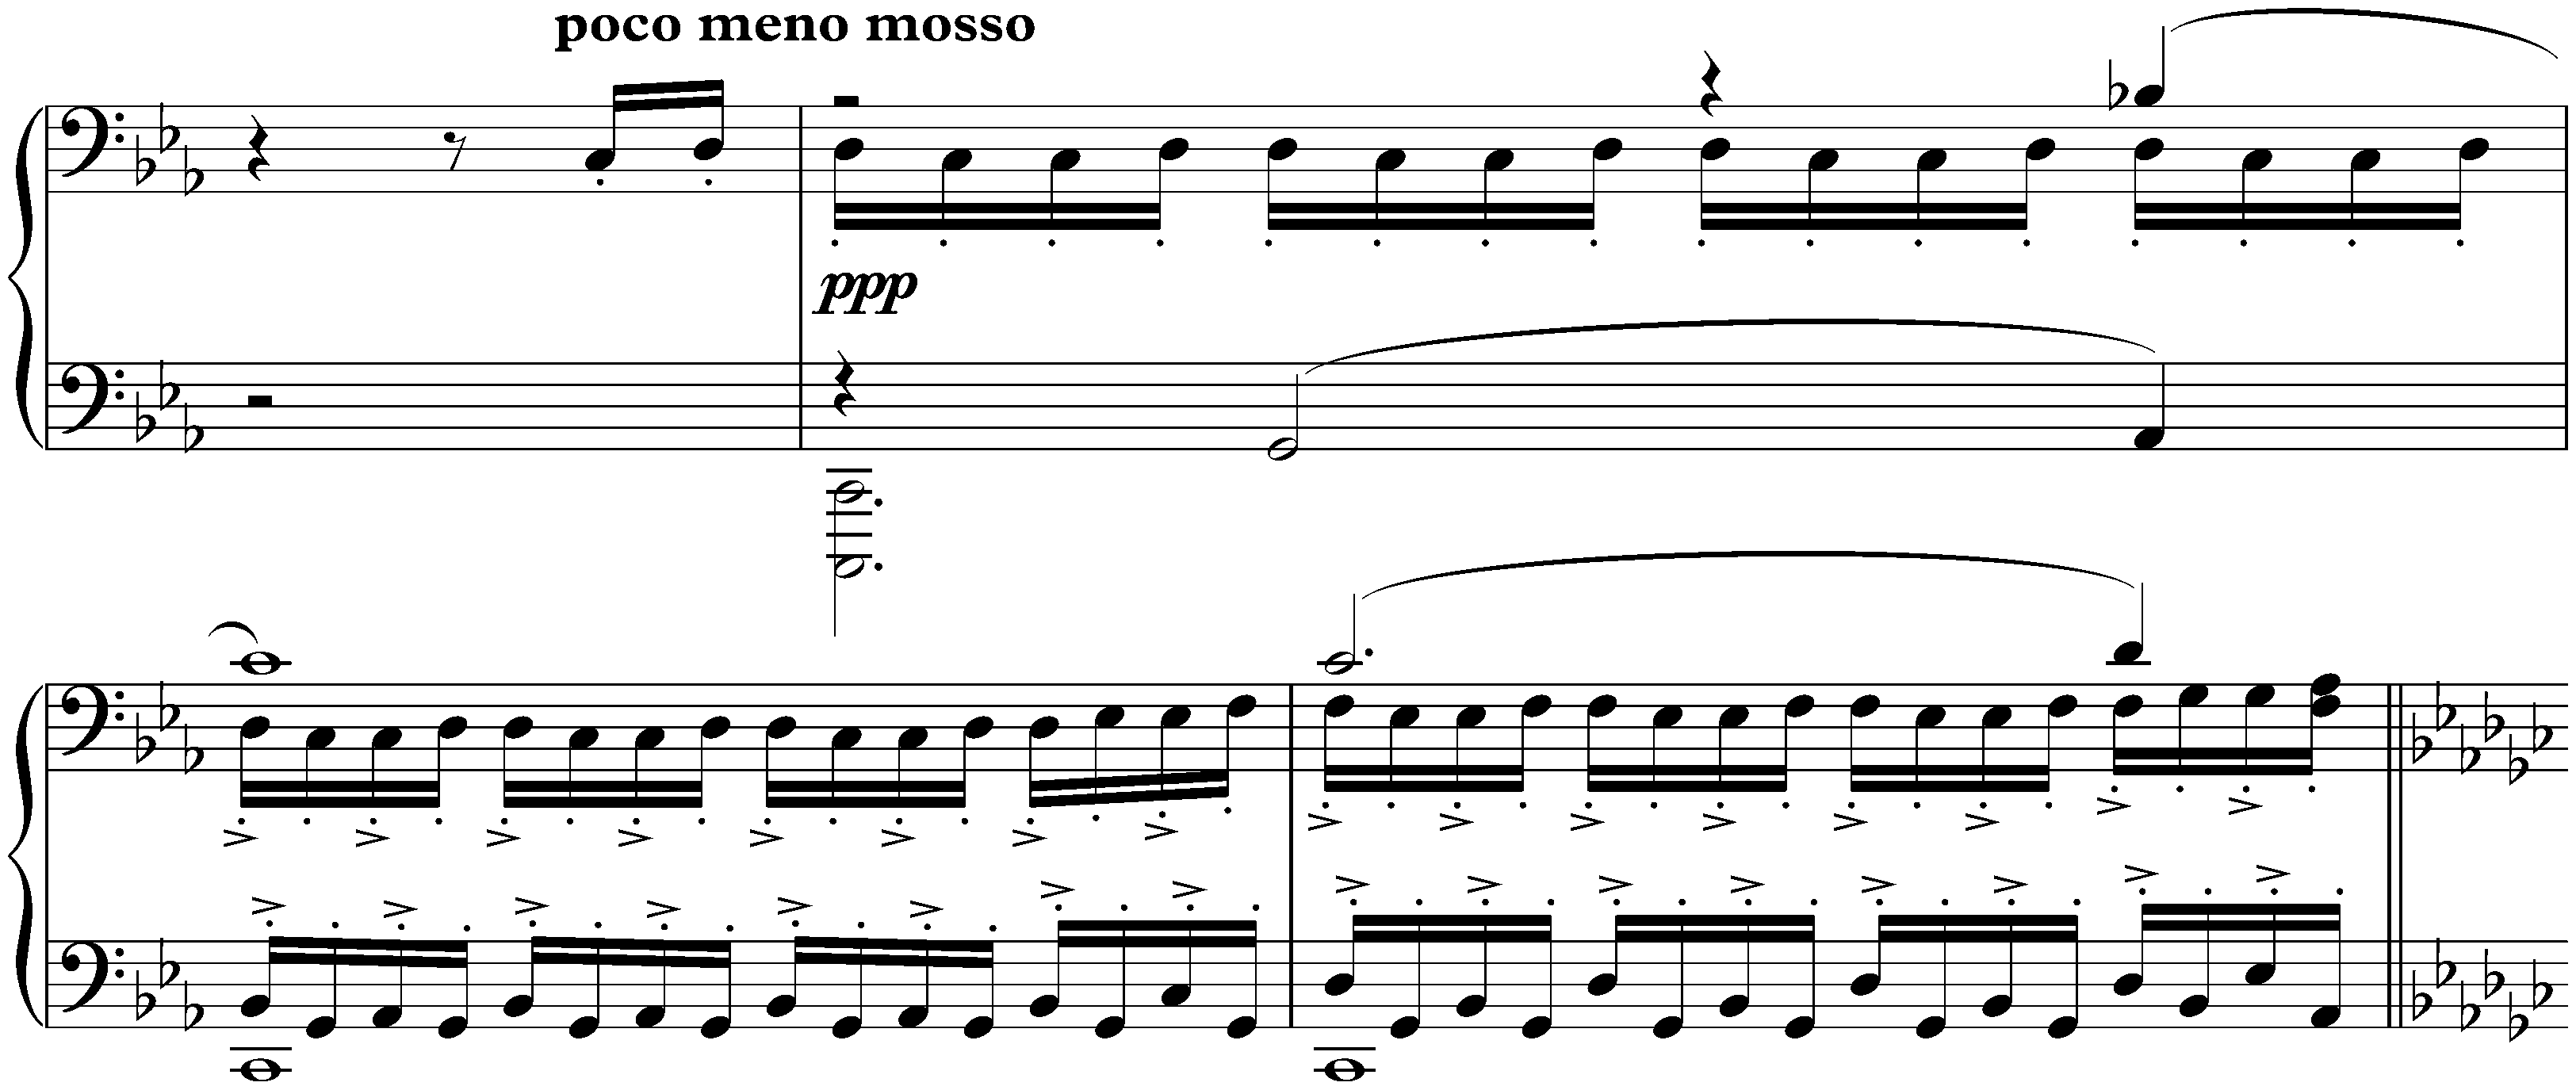 Études-tableaux, op. 39; 7. C minor